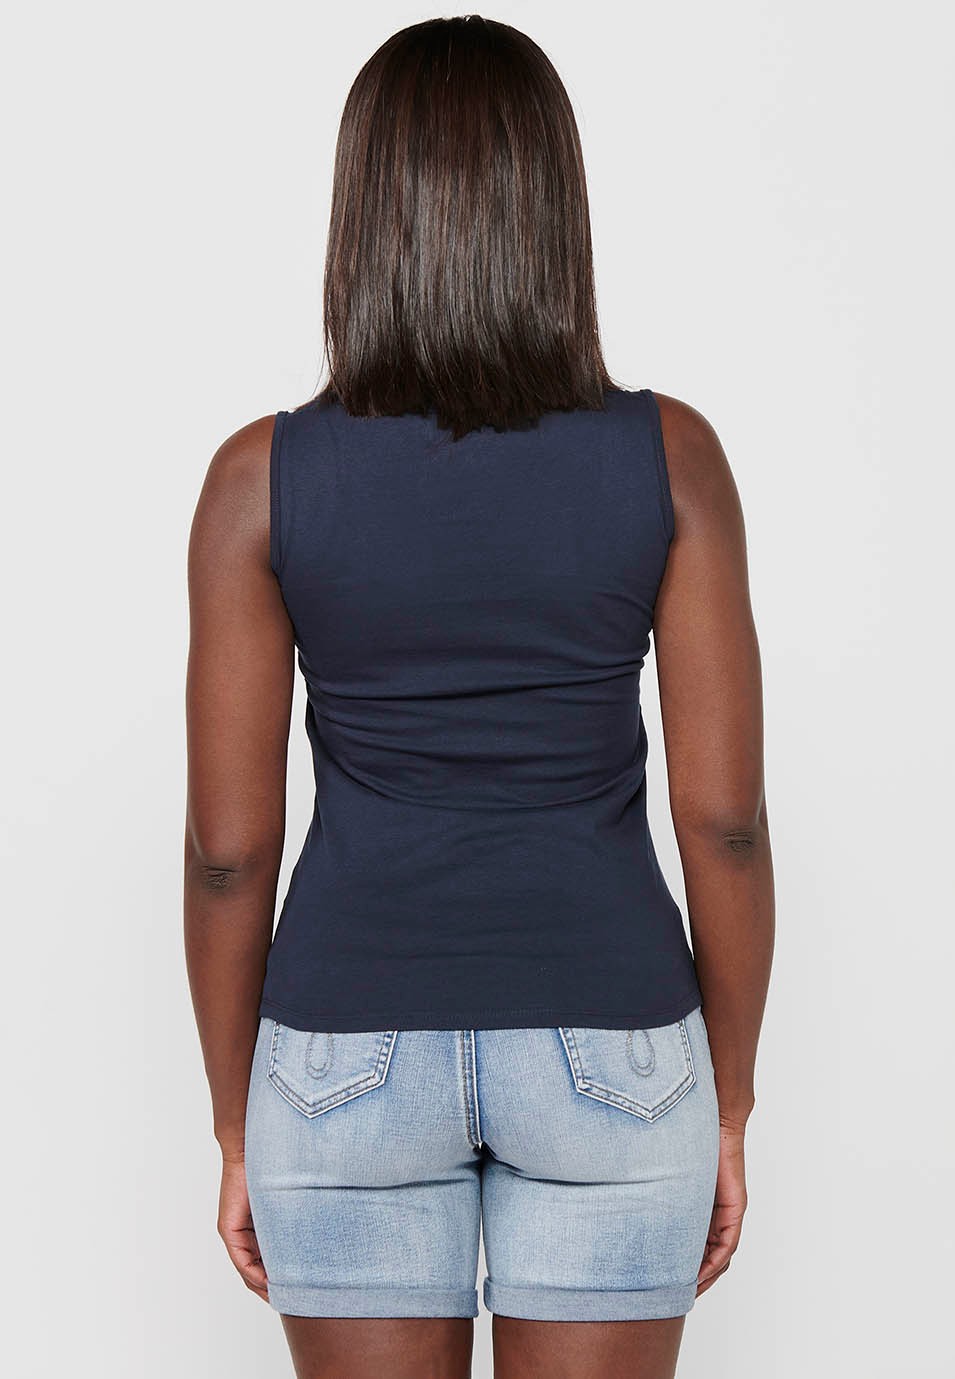 T-shirt sans manches, encolure ronde et broderie devant, coloris noir pour femme